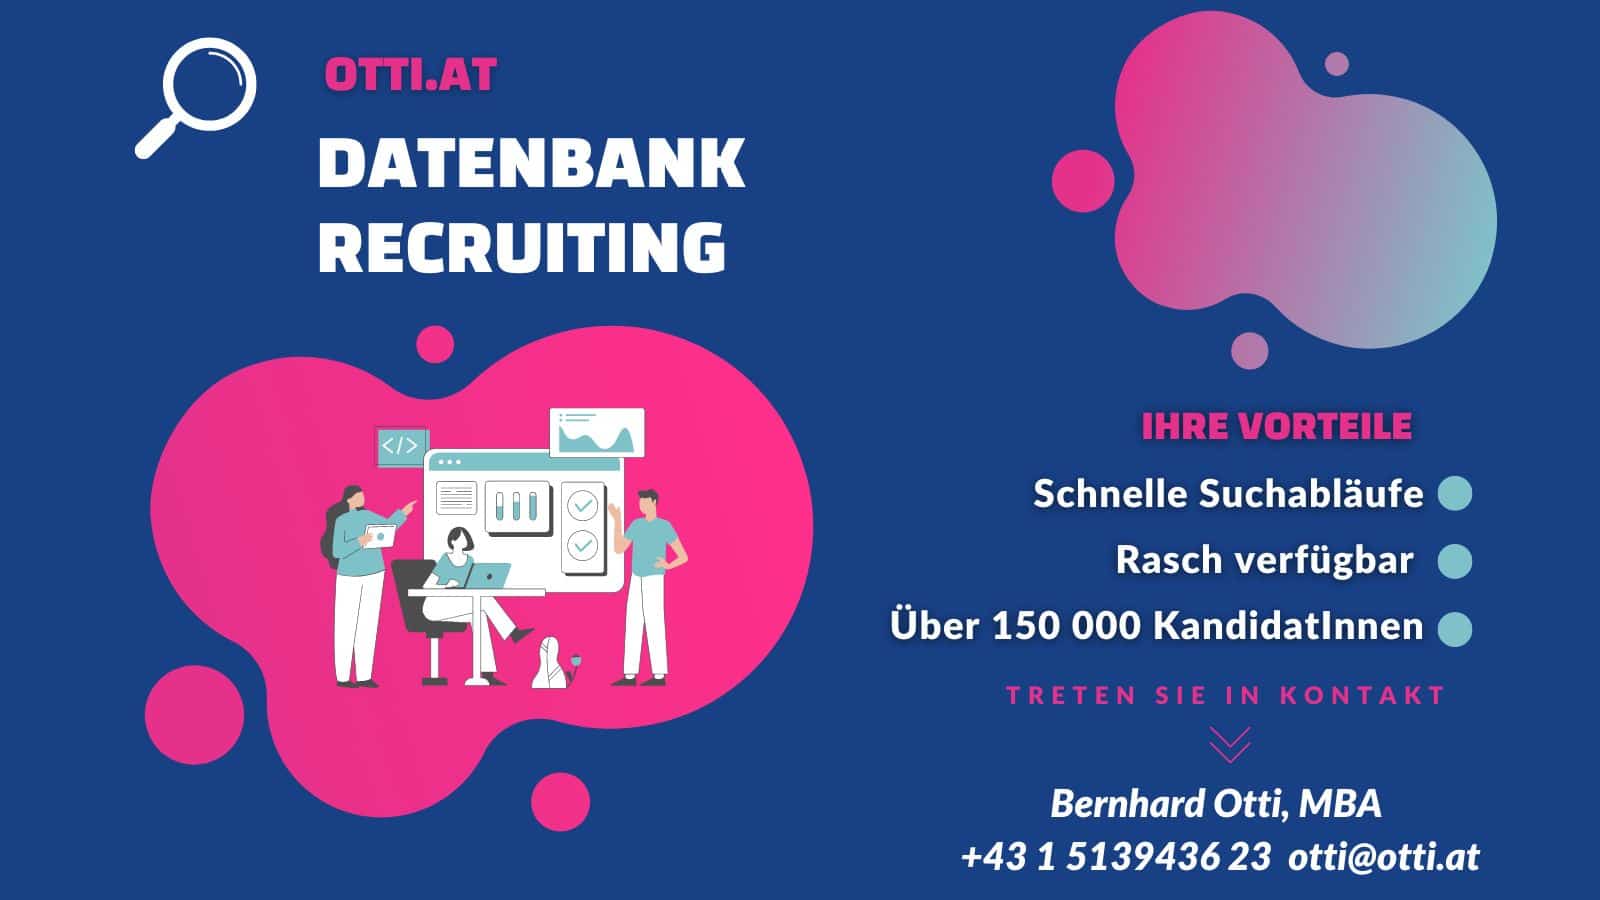 Datenbank-Recruiting – abrufbar für wohnhaft in Österreich